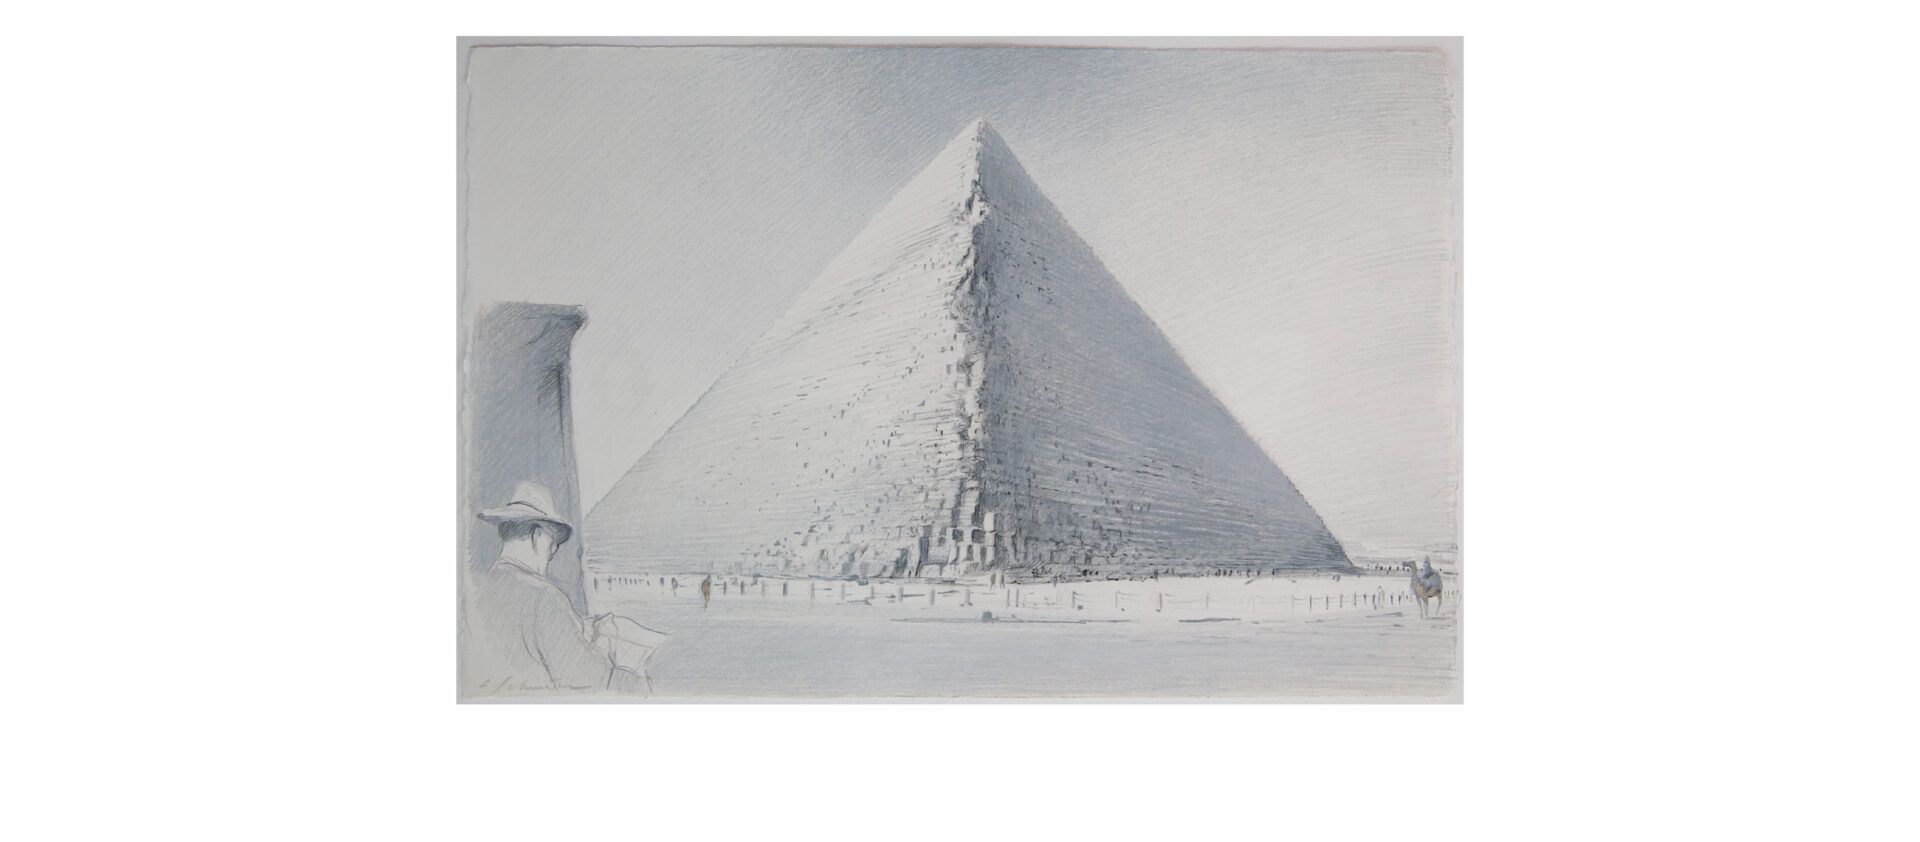 Chantier dans la pyramide de Khéops - mission scanpyramids